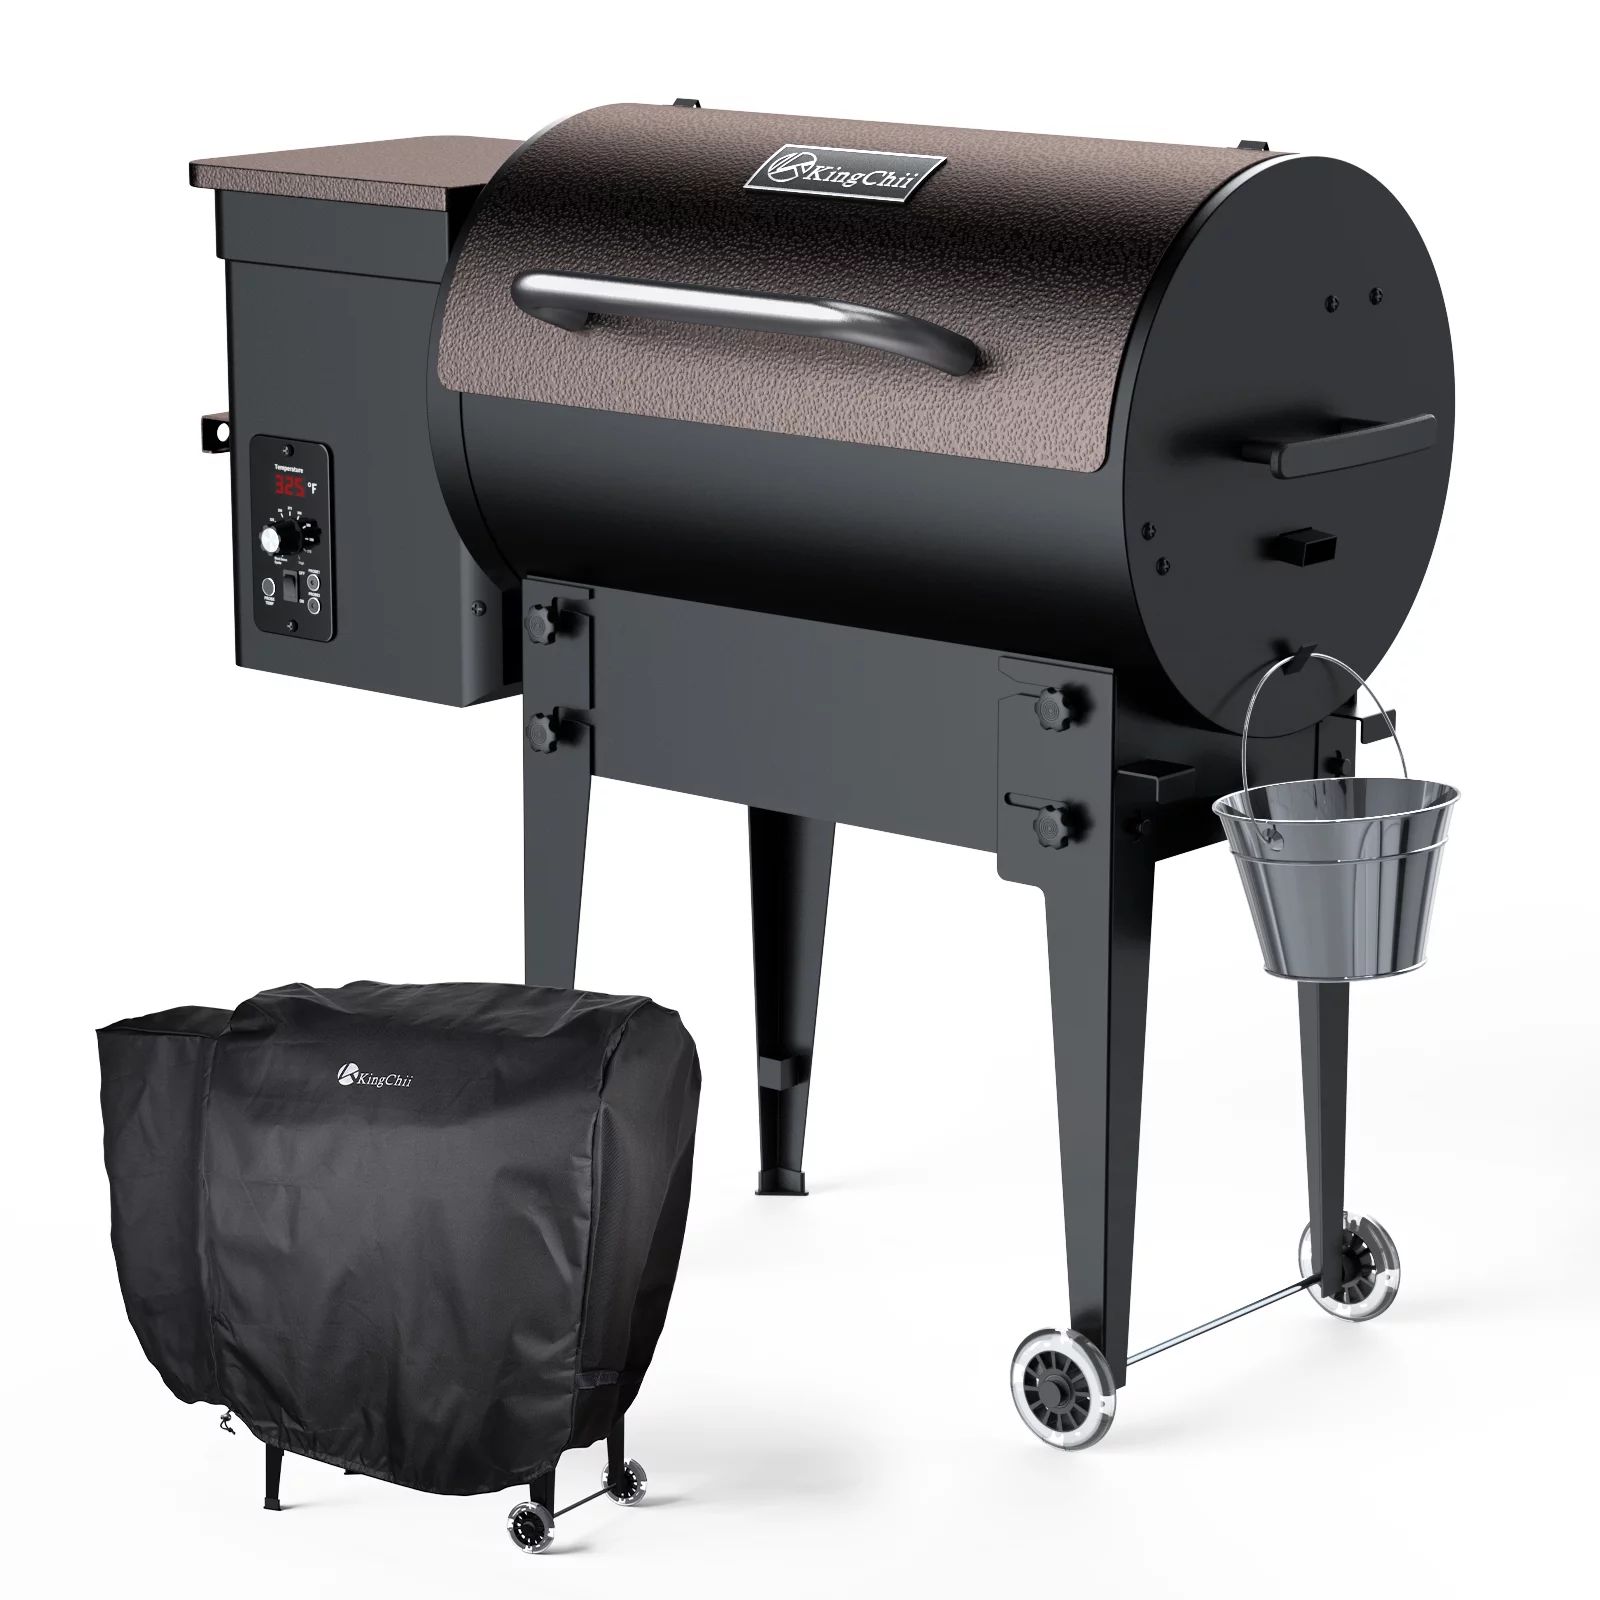 KingChii 456 sq. in Wood Pellet Smoker & Grill BBQ with Auto Temperature Controls, Folding Legs f... | Walmart (US)